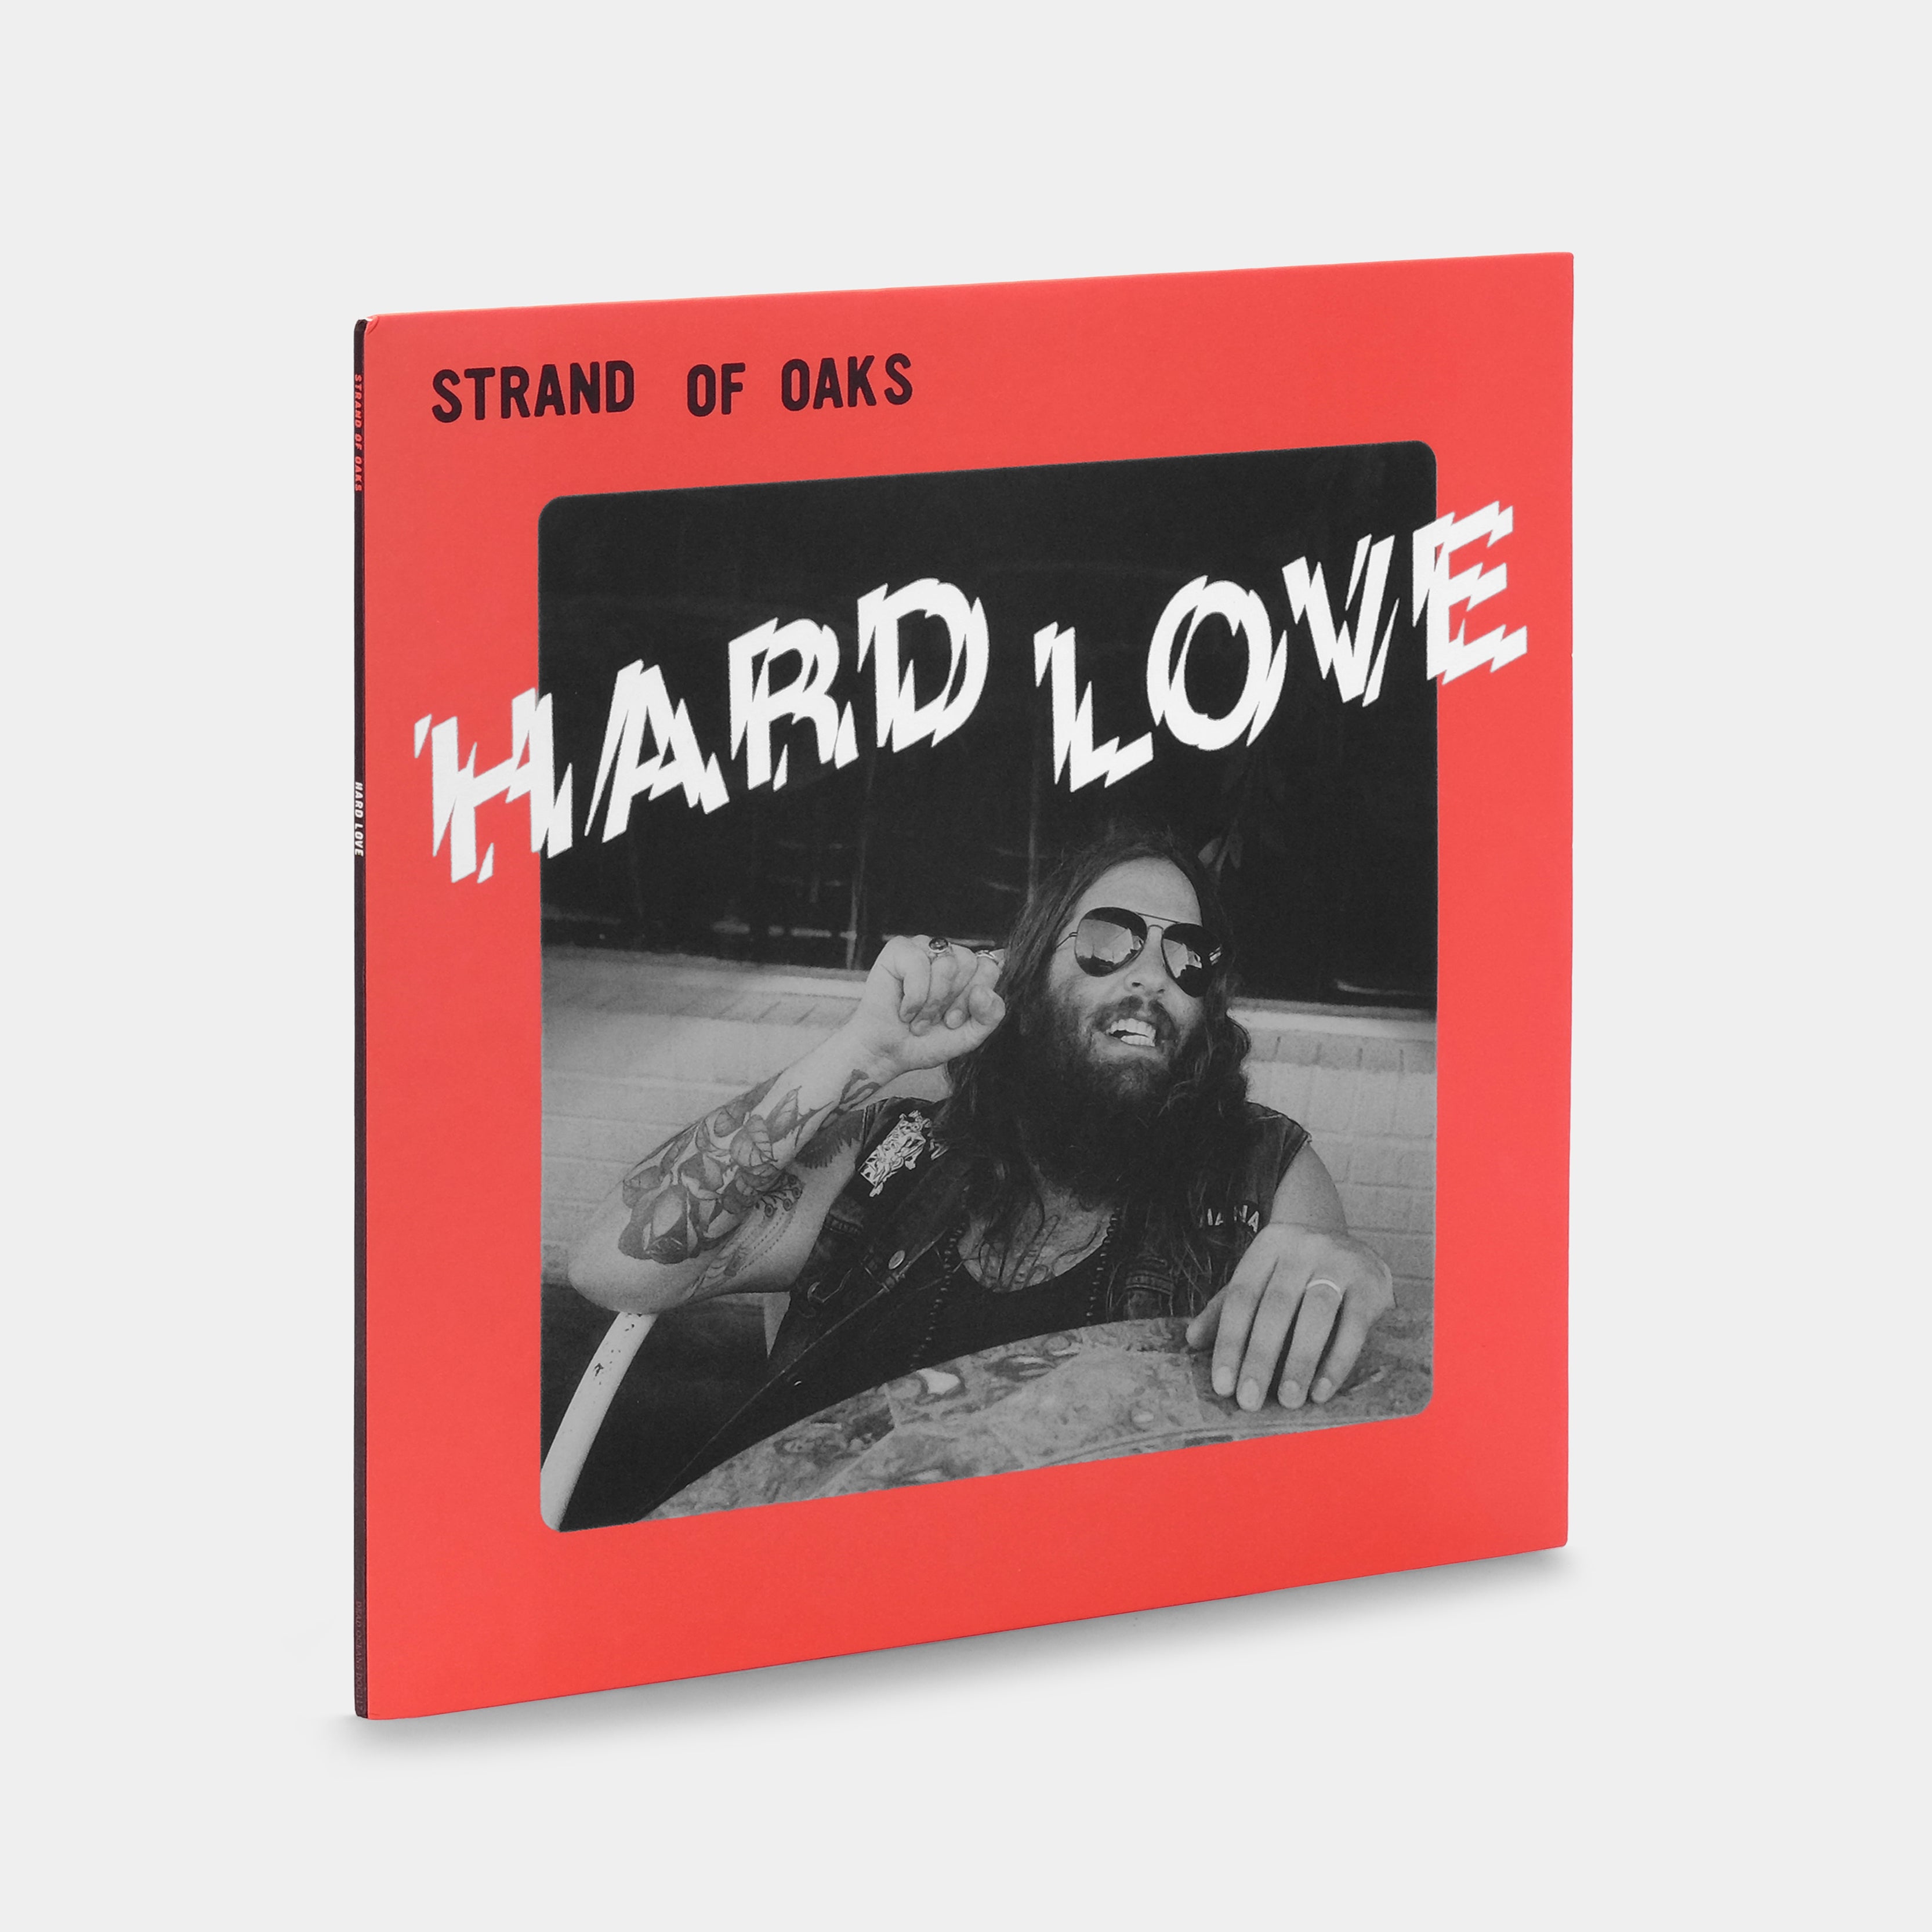 Strand Of Oaks - Hard Love LP Green & White Swirl Vinyl Record